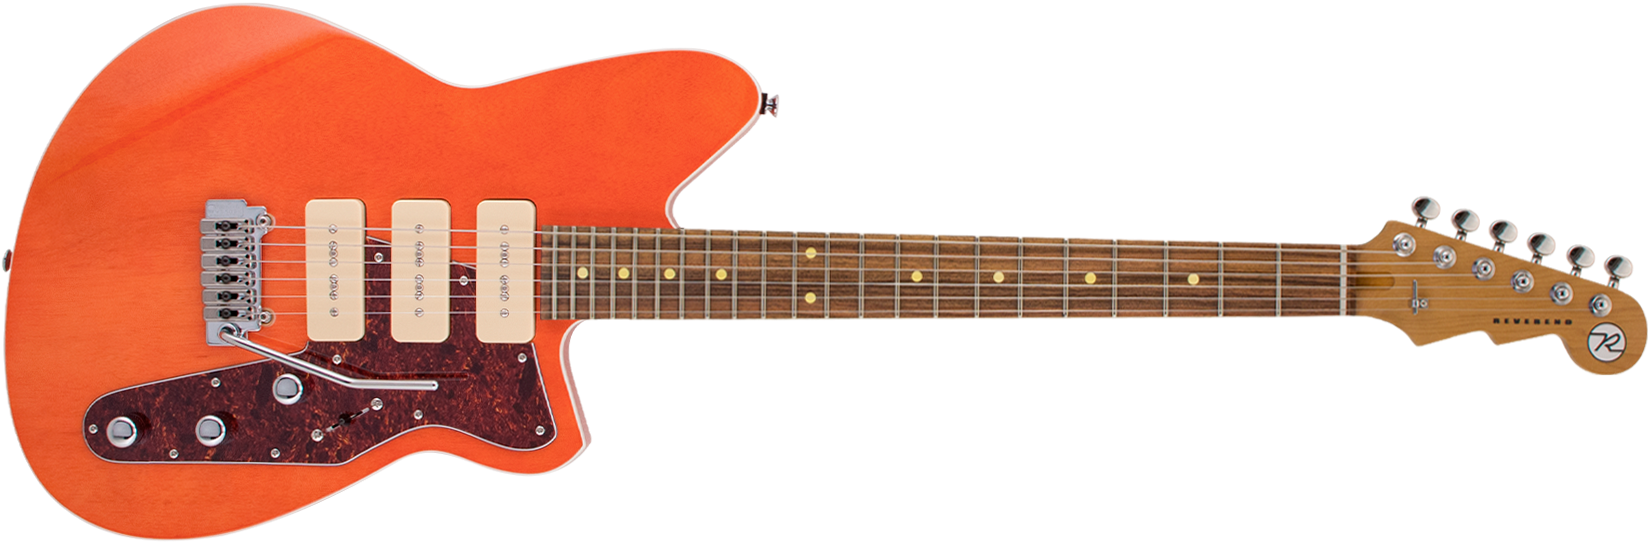 Orange Electric Guitar PNG